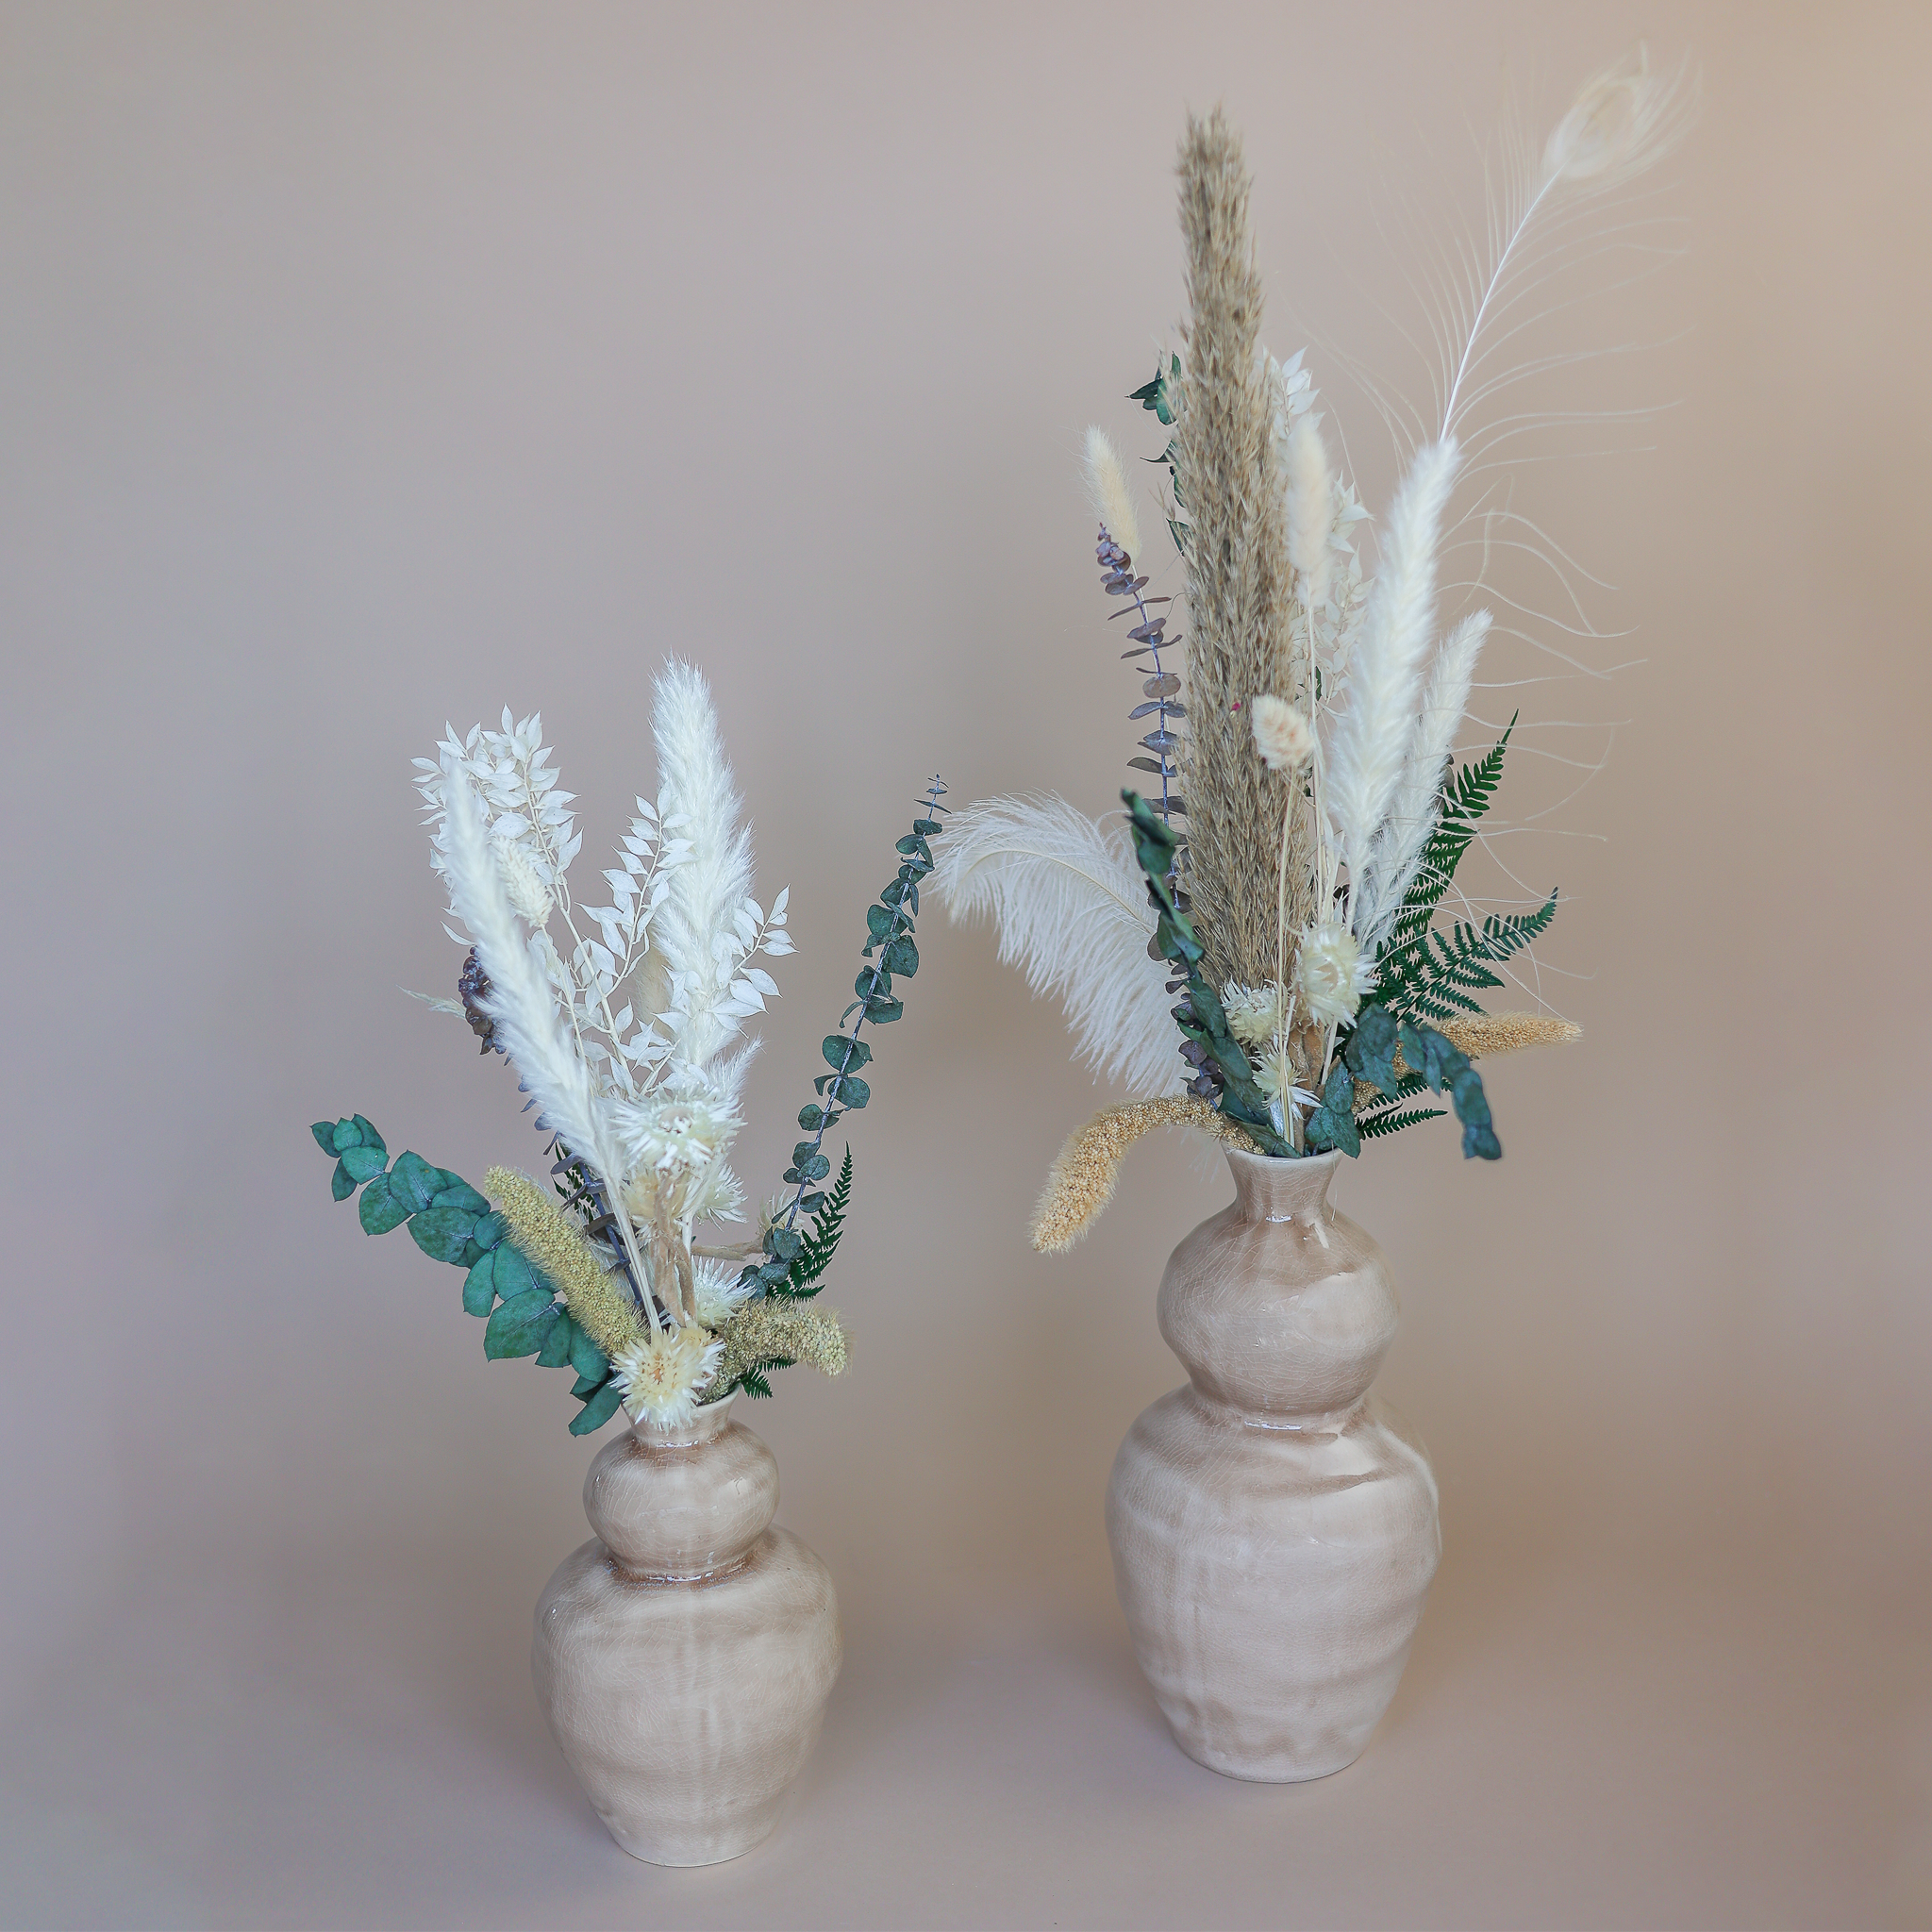 Zwei Trockenblumensträuße in Naturtönen in Vasen.